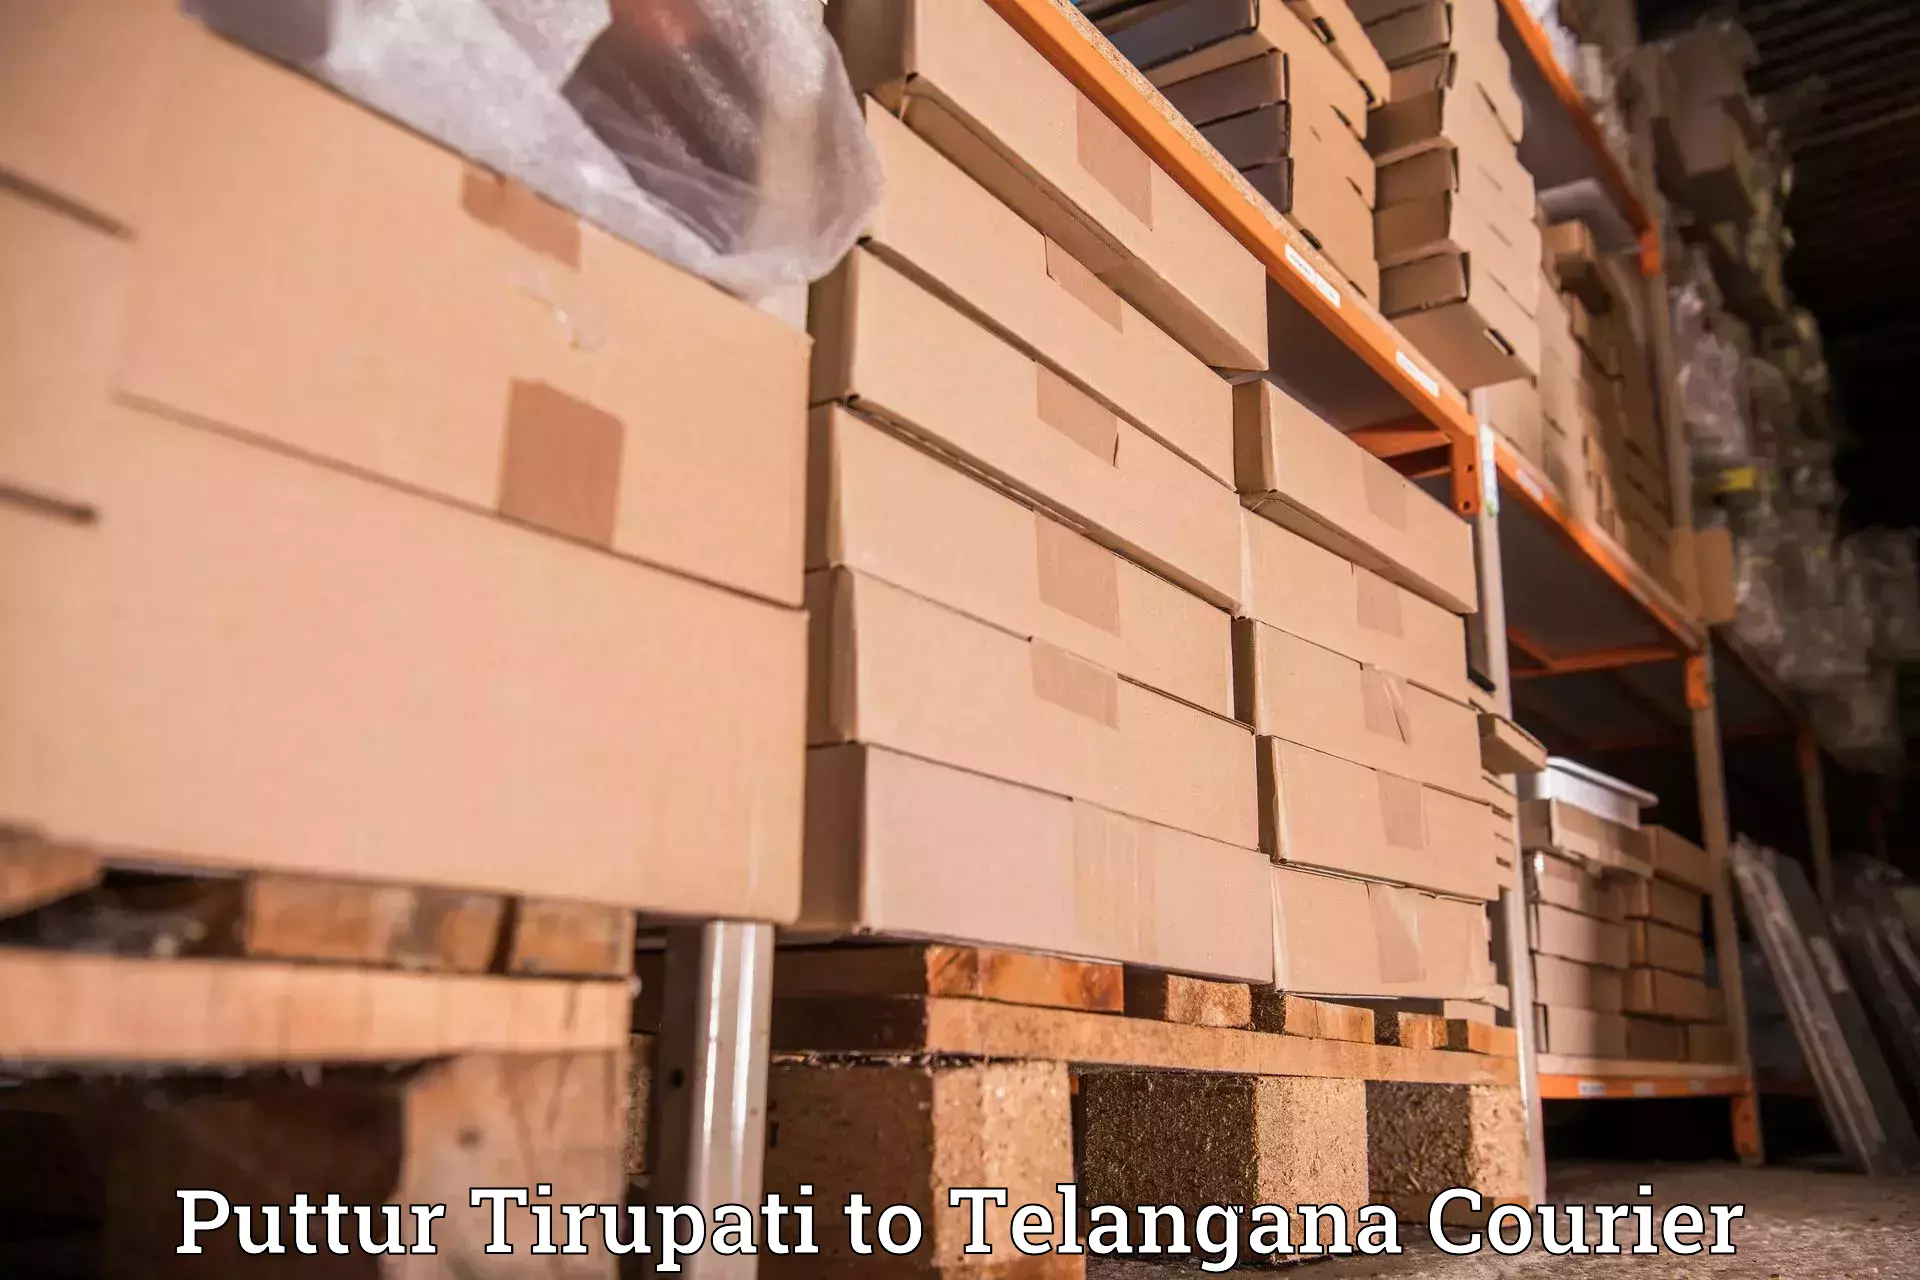 Reliable courier services Puttur Tirupati to Gudur Warangal